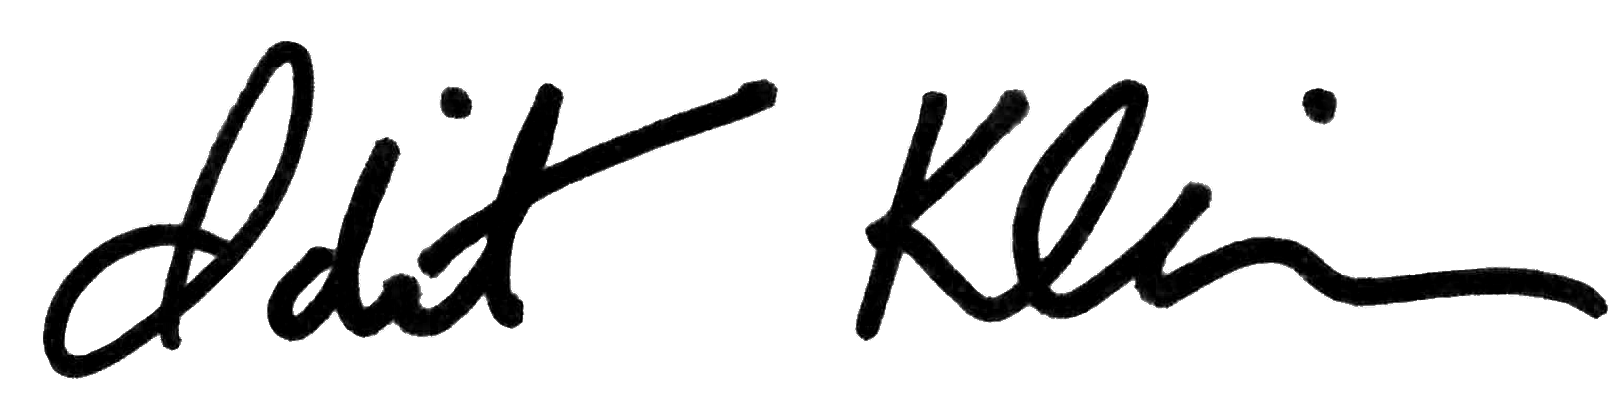 Idit Klein transparent signature